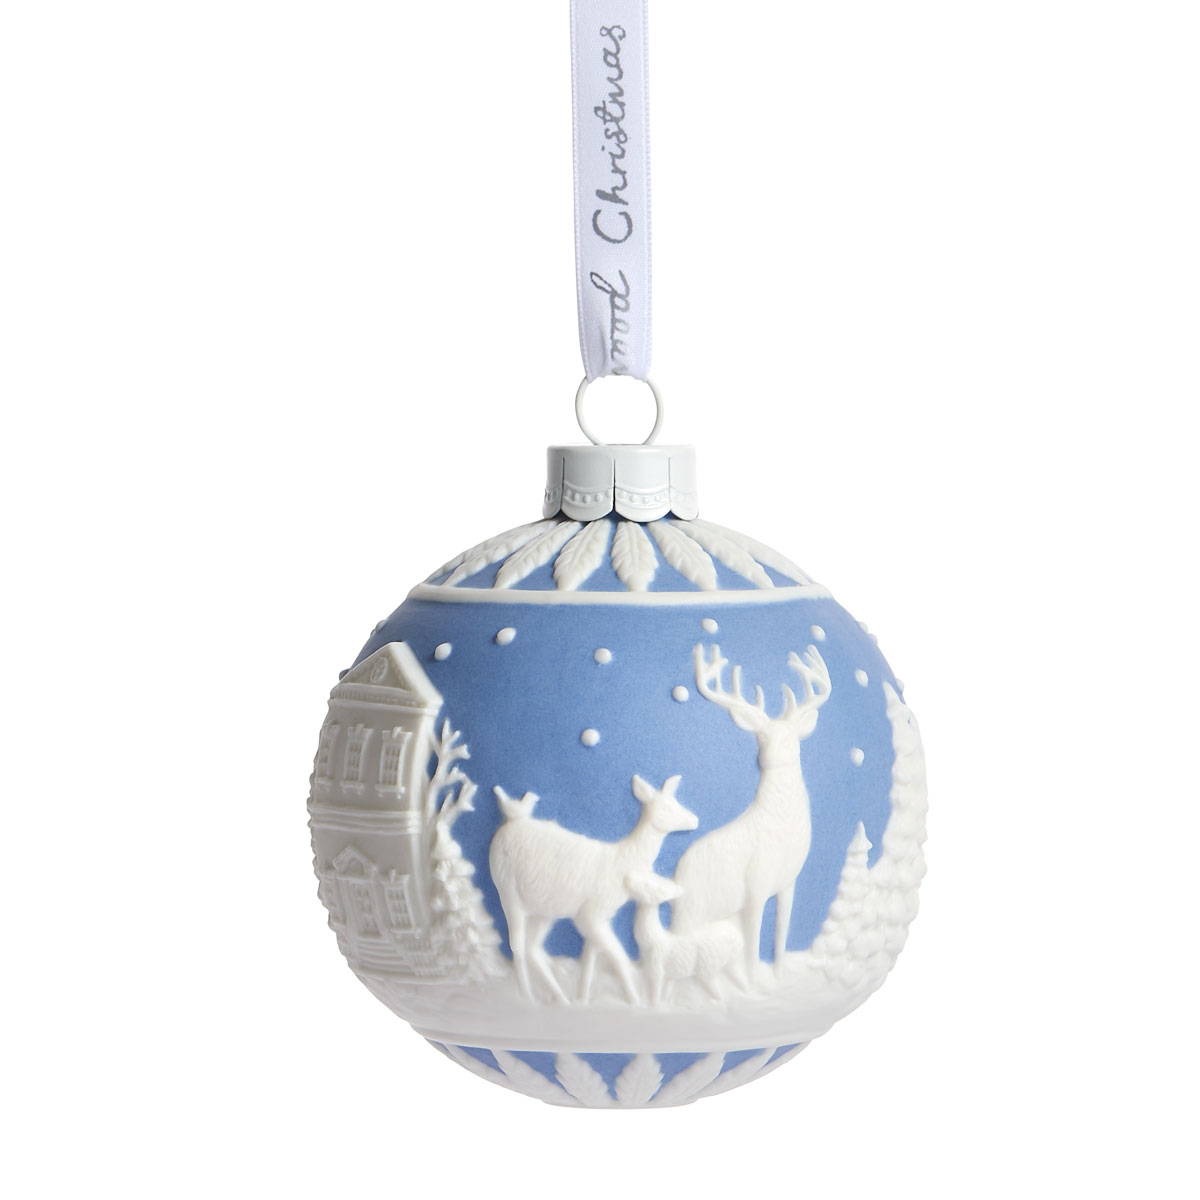 Wedgwood Christmas Deer Bauble Ornament